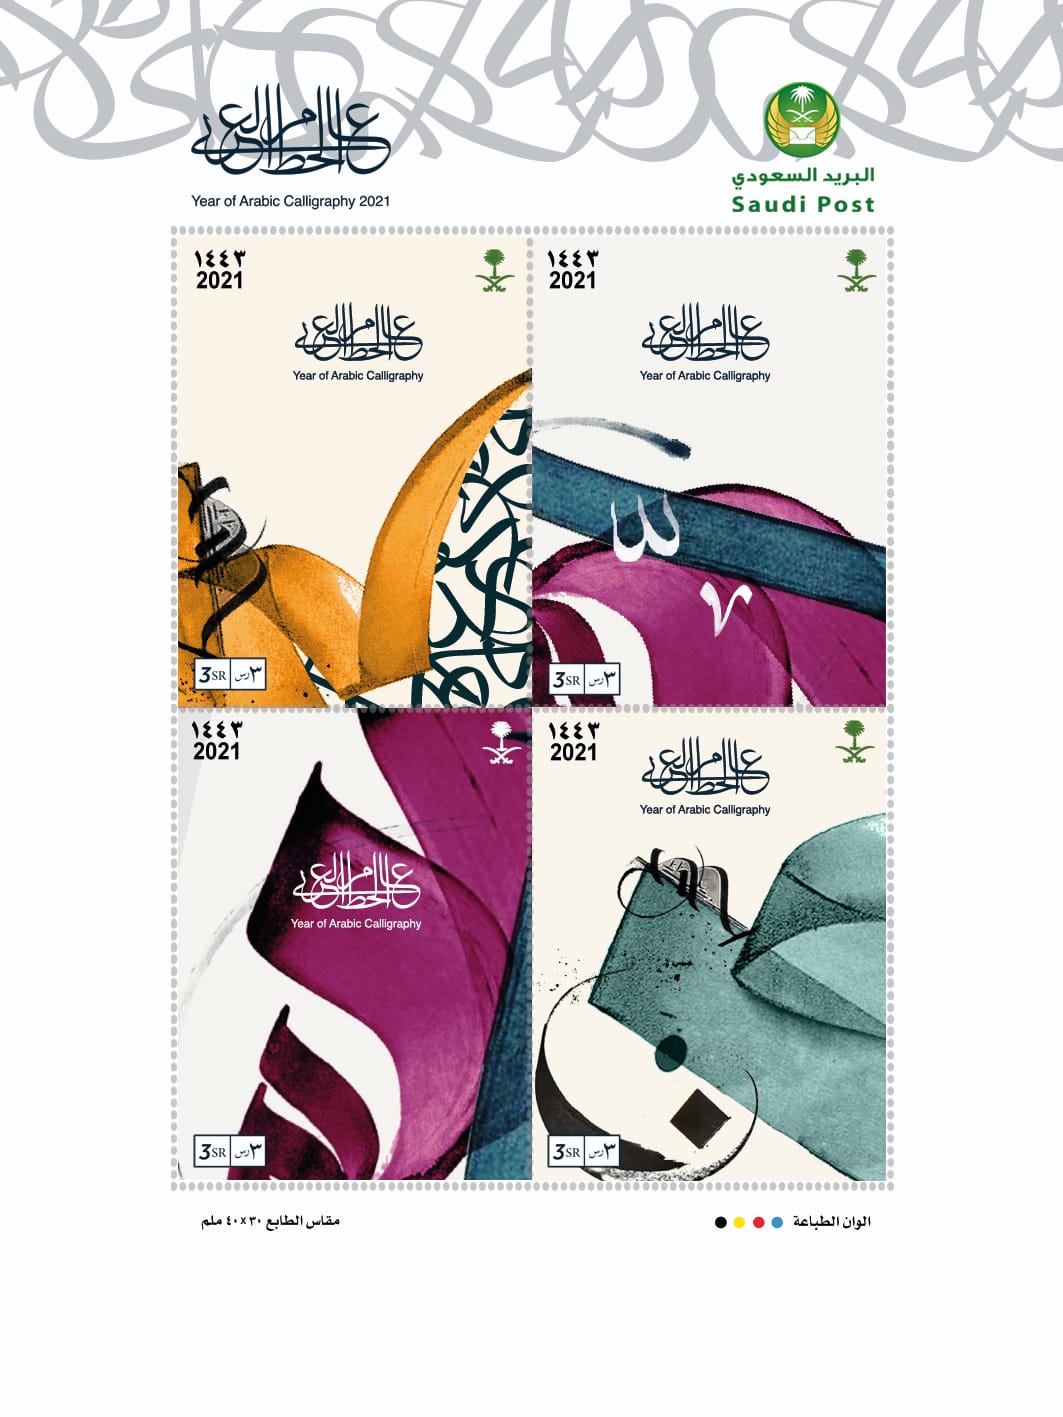 البريد السعودي “سبل” يطلق المجموعة الثالثة لطوابع عام الخط العربي